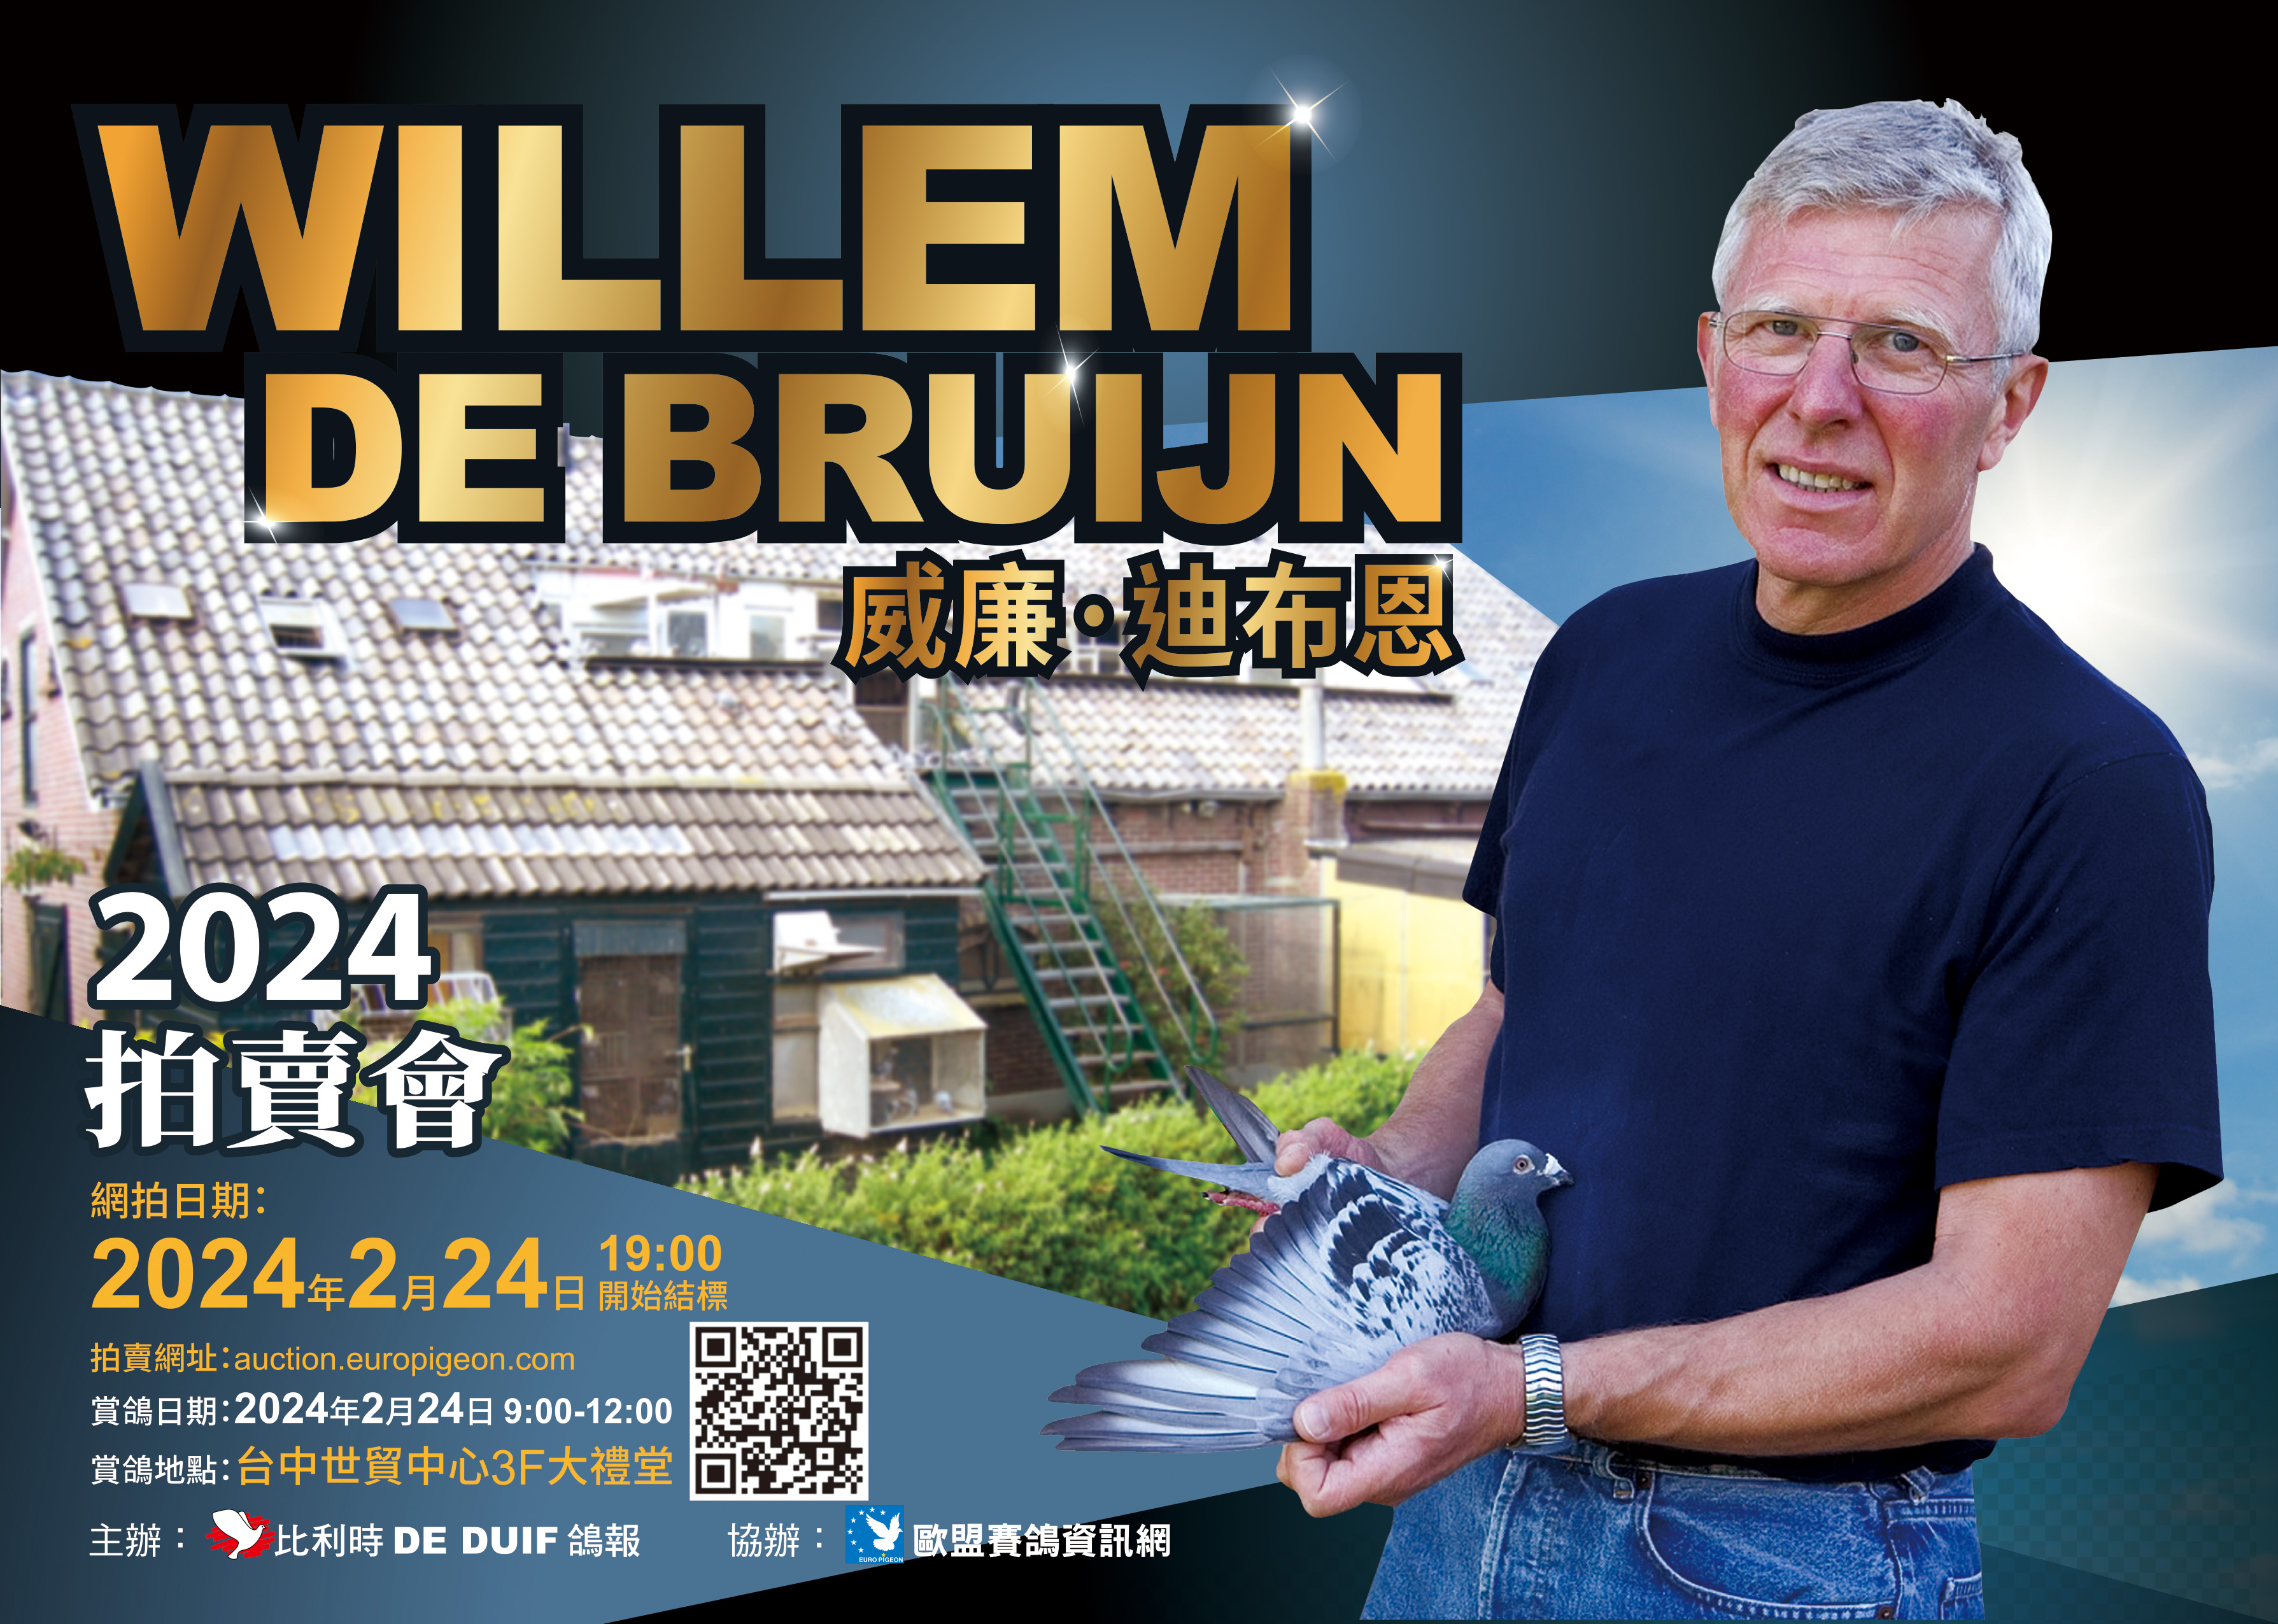 2024 Willem de Bruijn auction in Taiwan